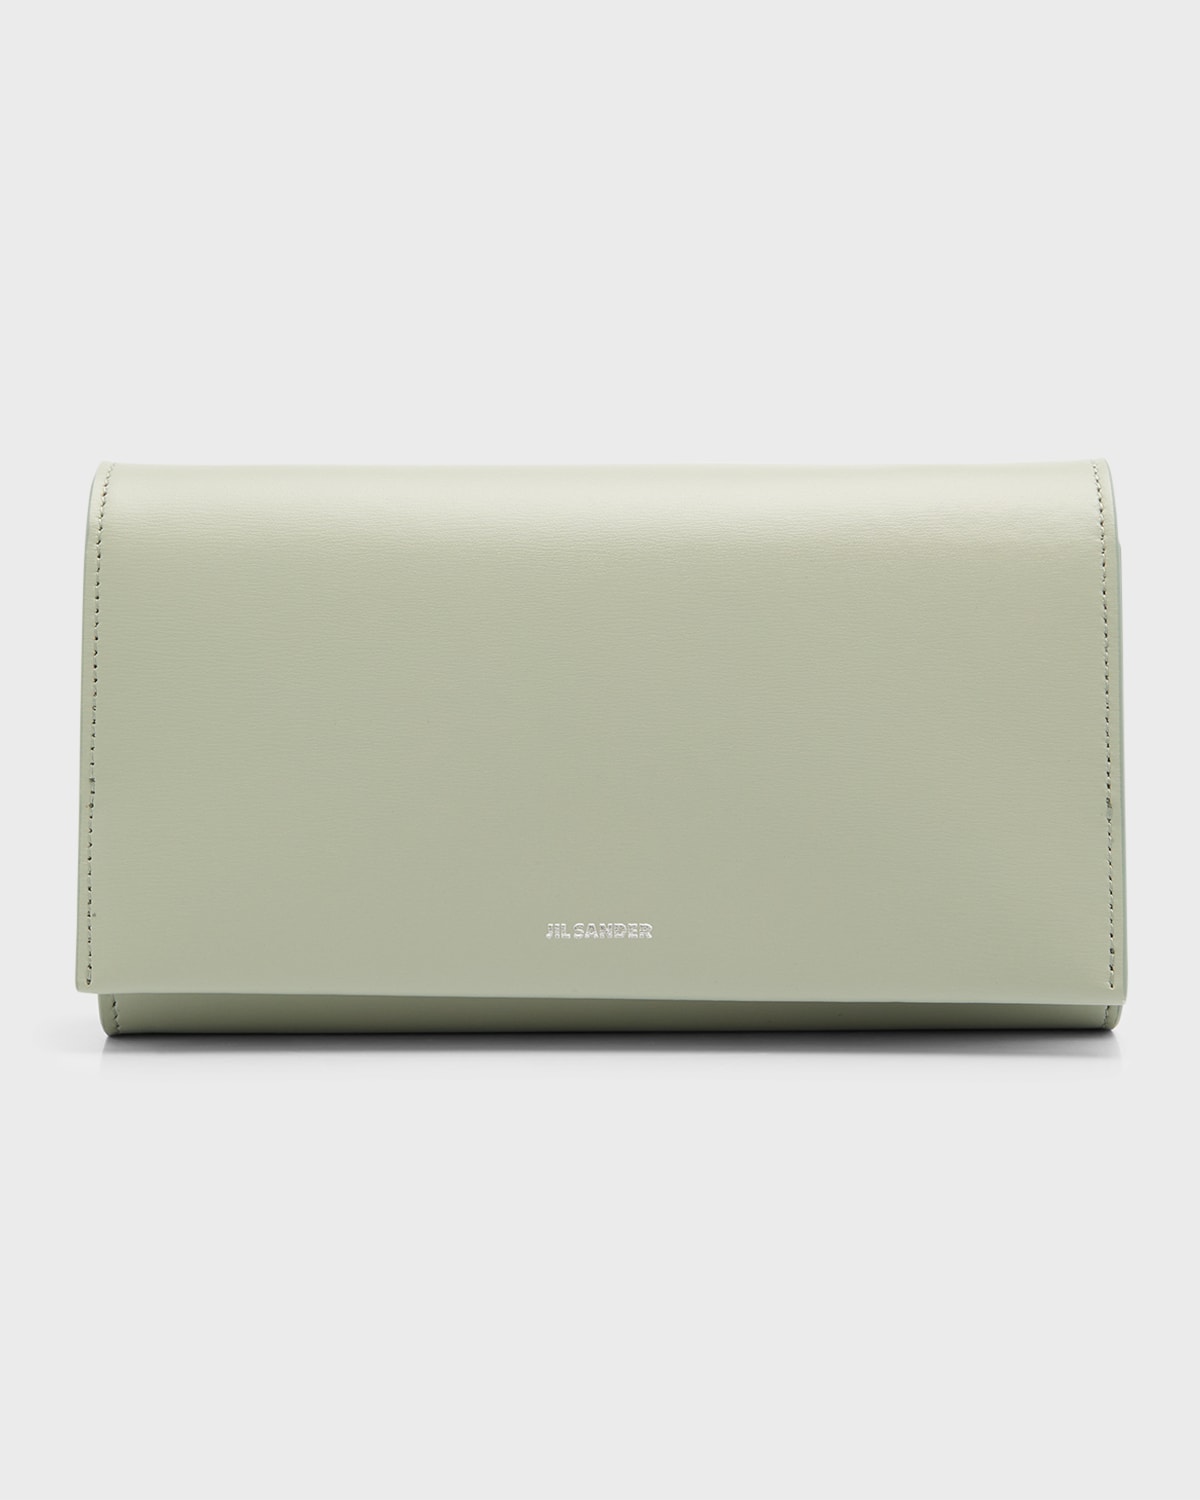 Jil Sander Sling Small Leather Shoulder Bag | Neiman Marcus